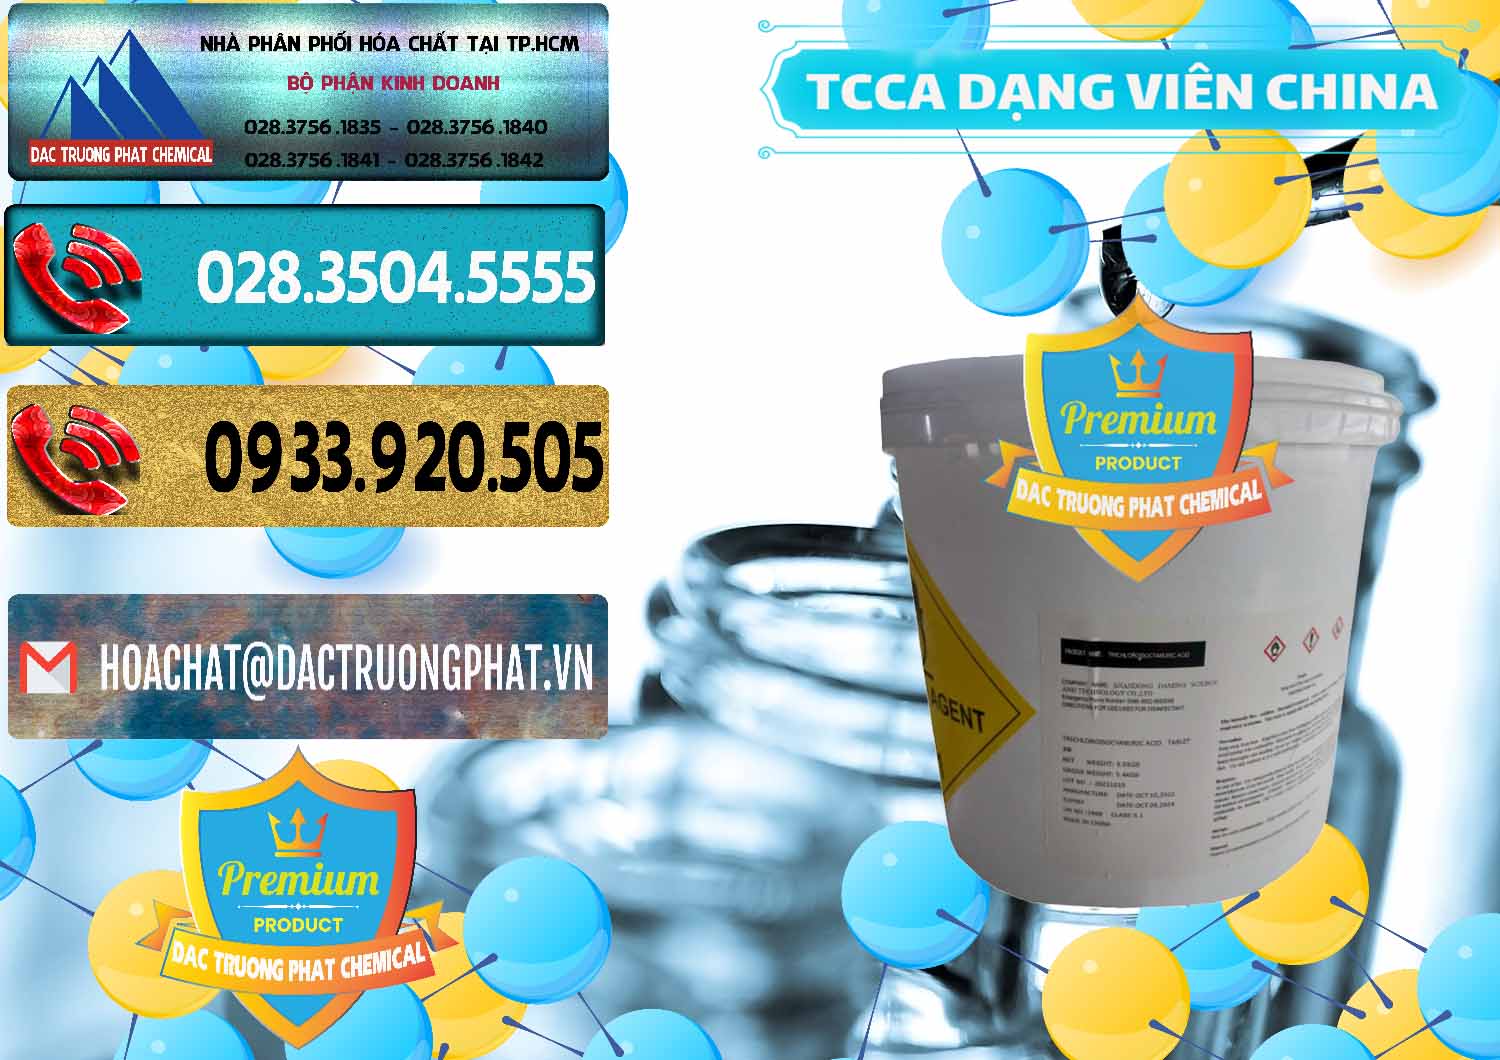 Đơn vị chuyên cung ứng _ bán TCCA - Acid Trichloroisocyanuric Dạng Viên Thùng 5kg Trung Quốc China - 0379 - Đơn vị phân phối & cung cấp hóa chất tại TP.HCM - hoachatdetnhuom.com